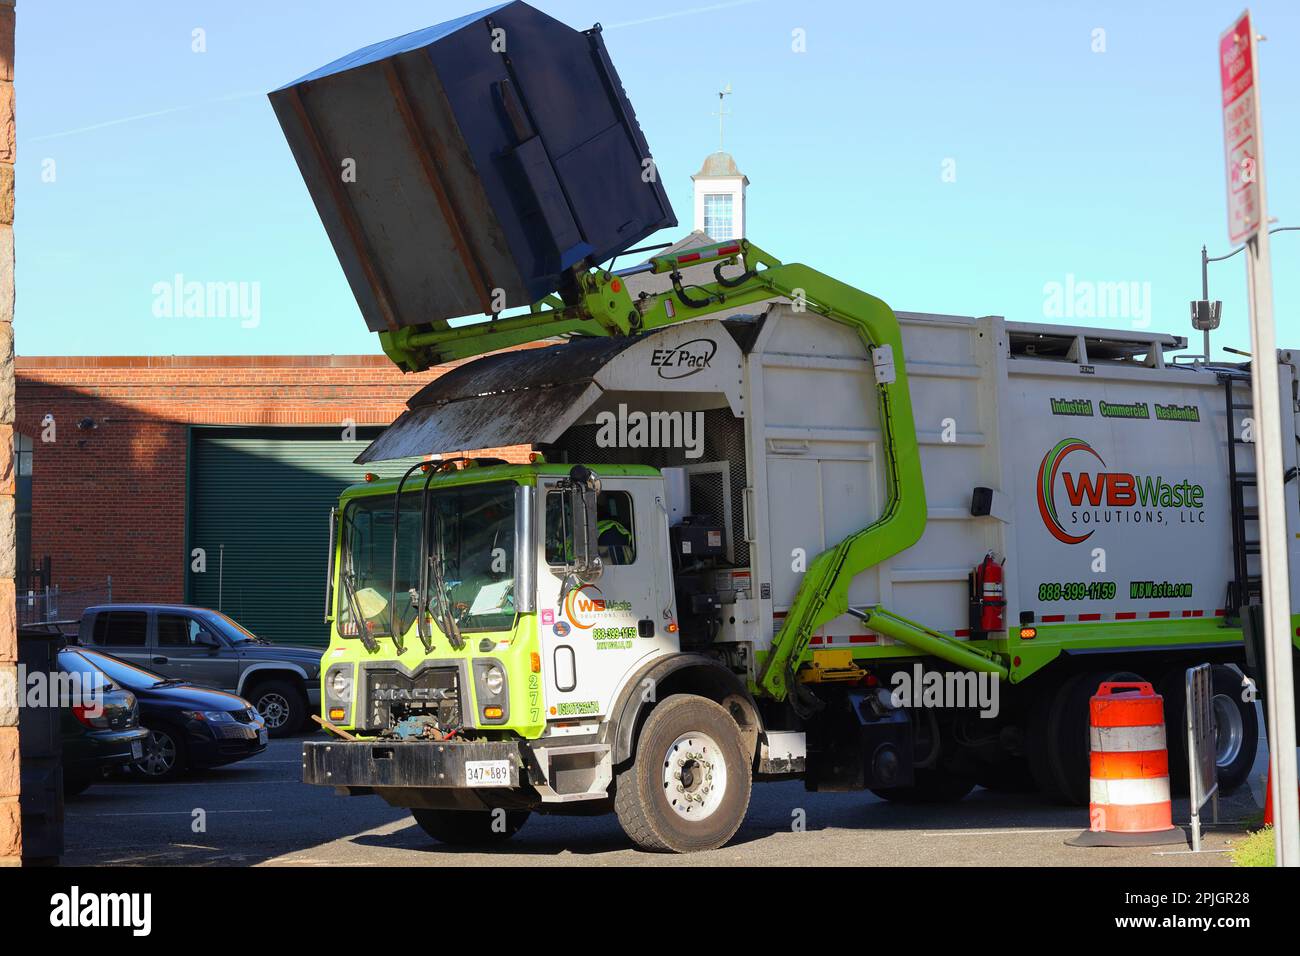 Ein Müllwagen von WB Waste Solutions mit Hercules-Mechanismus, EZ-Pack-Aufbau und Mack-Truck-Fahrgestell hebt einen 6-yd-Müllcontainer zur Müllbeseitigung an. Stockfoto